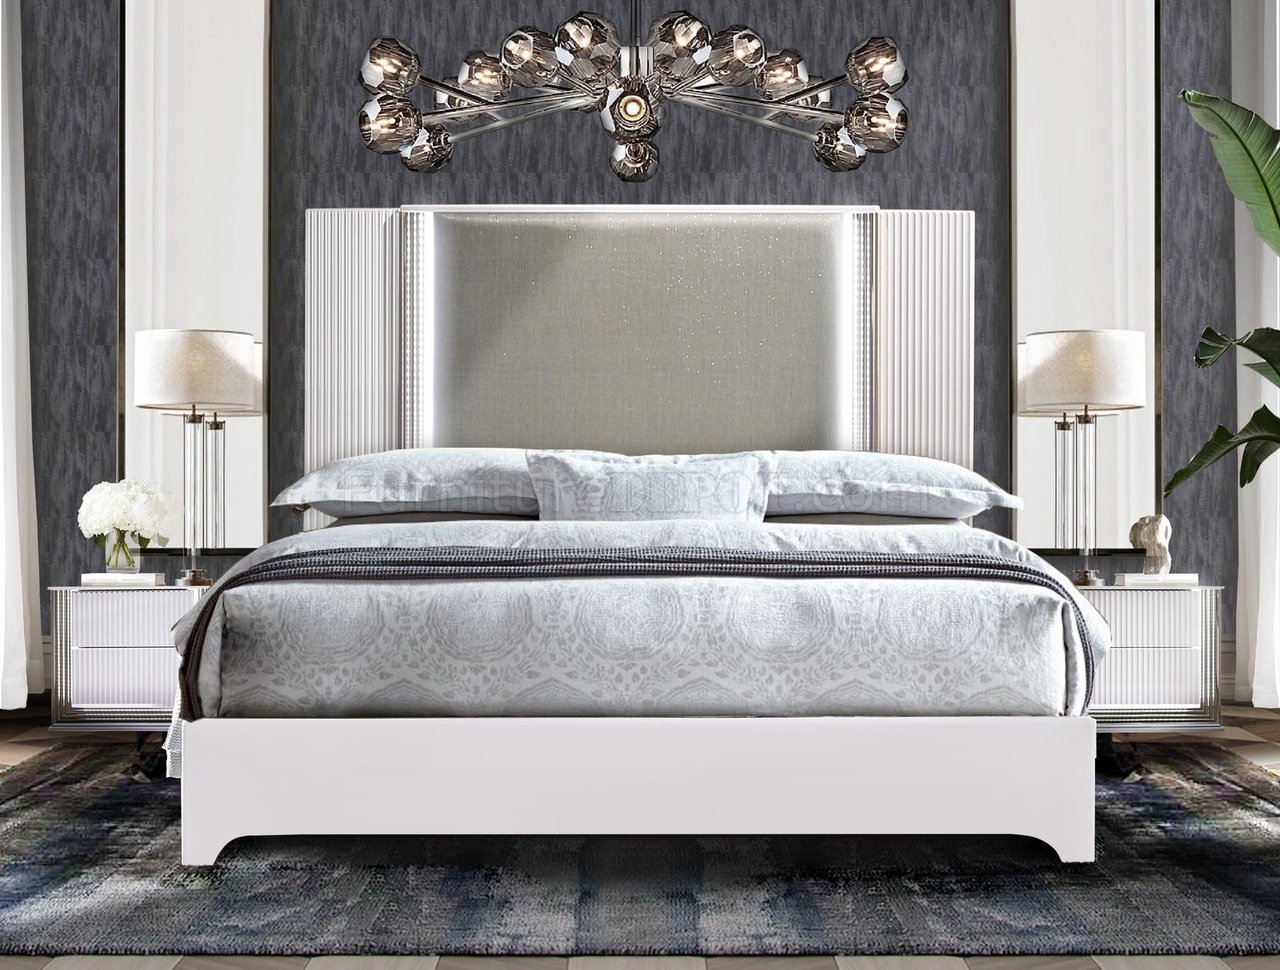 aspen bedroom white furniture